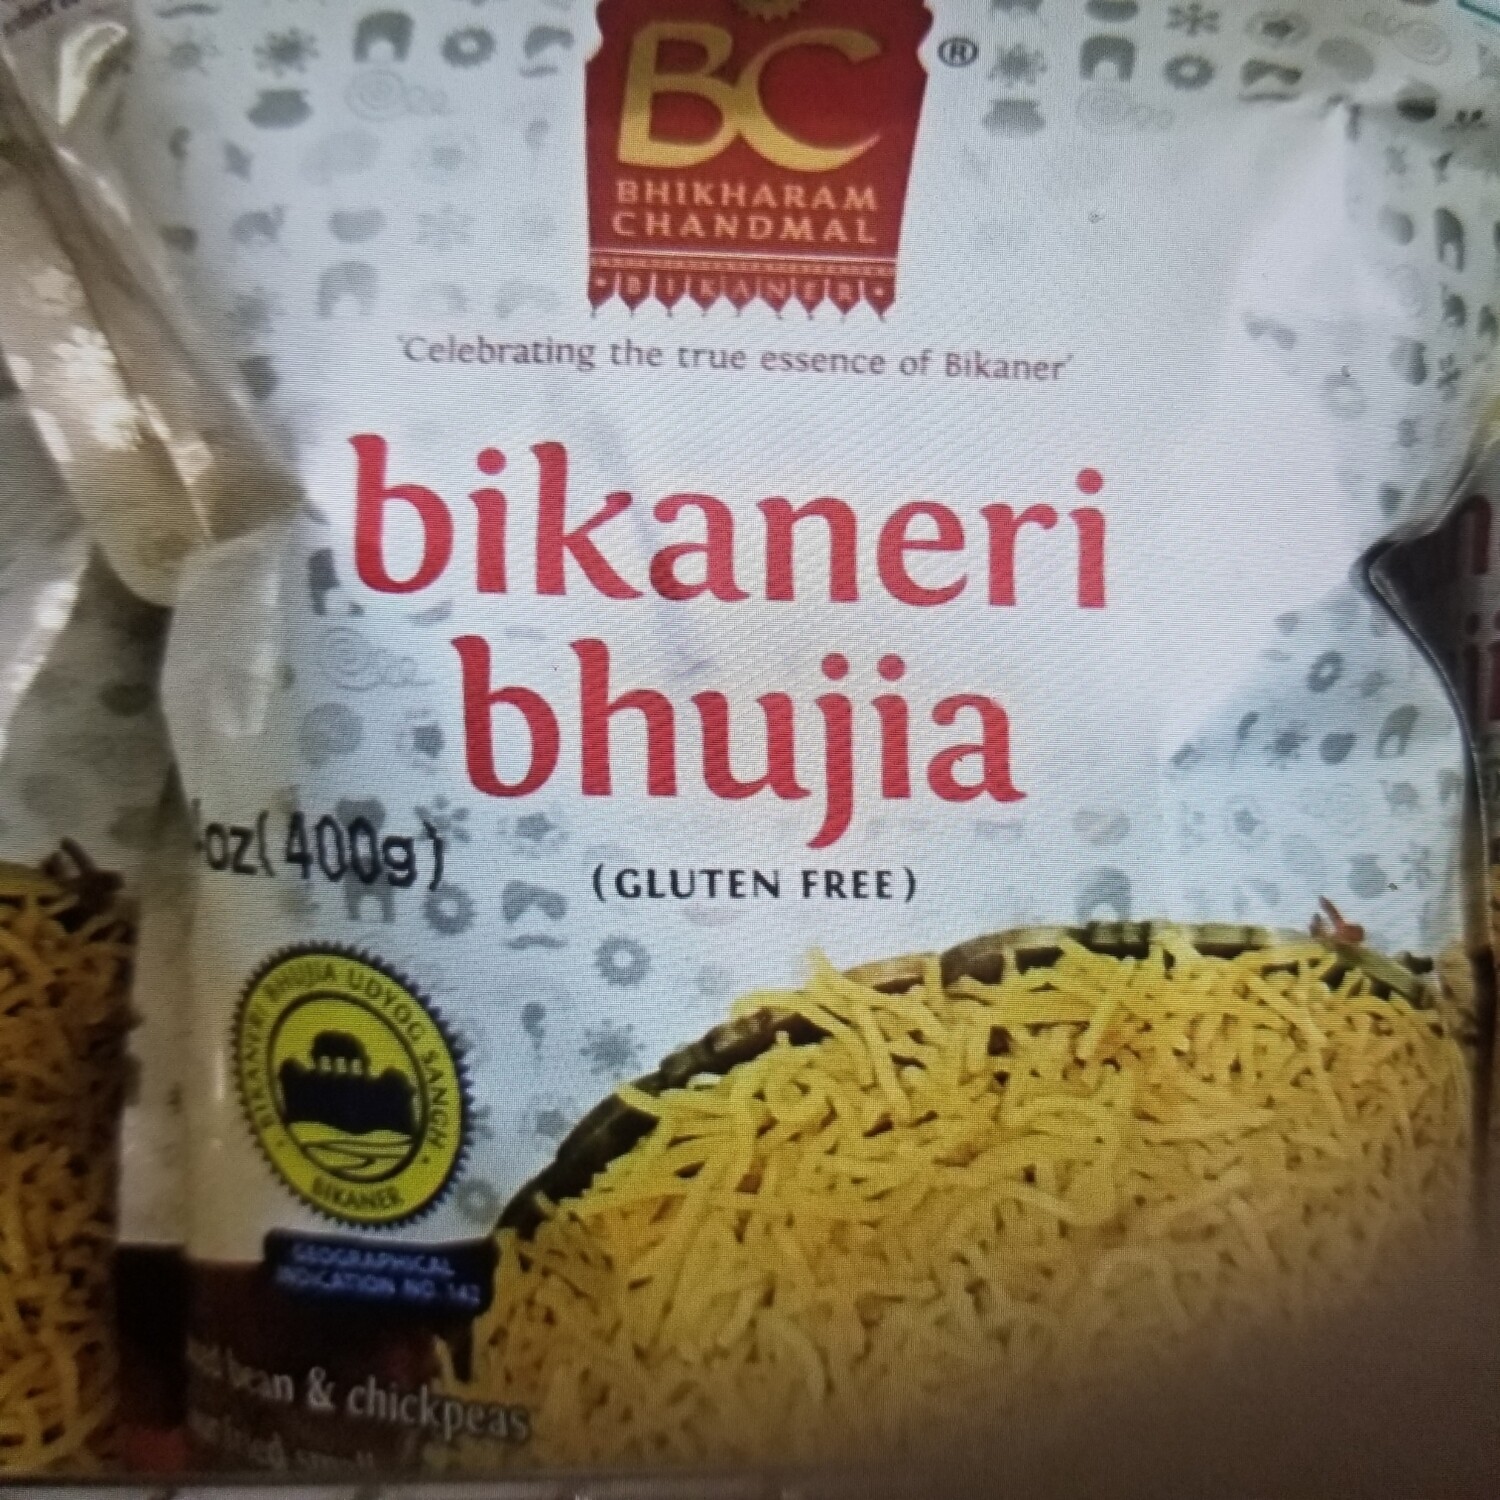 BC BIKANERI BHUJIA 400gm